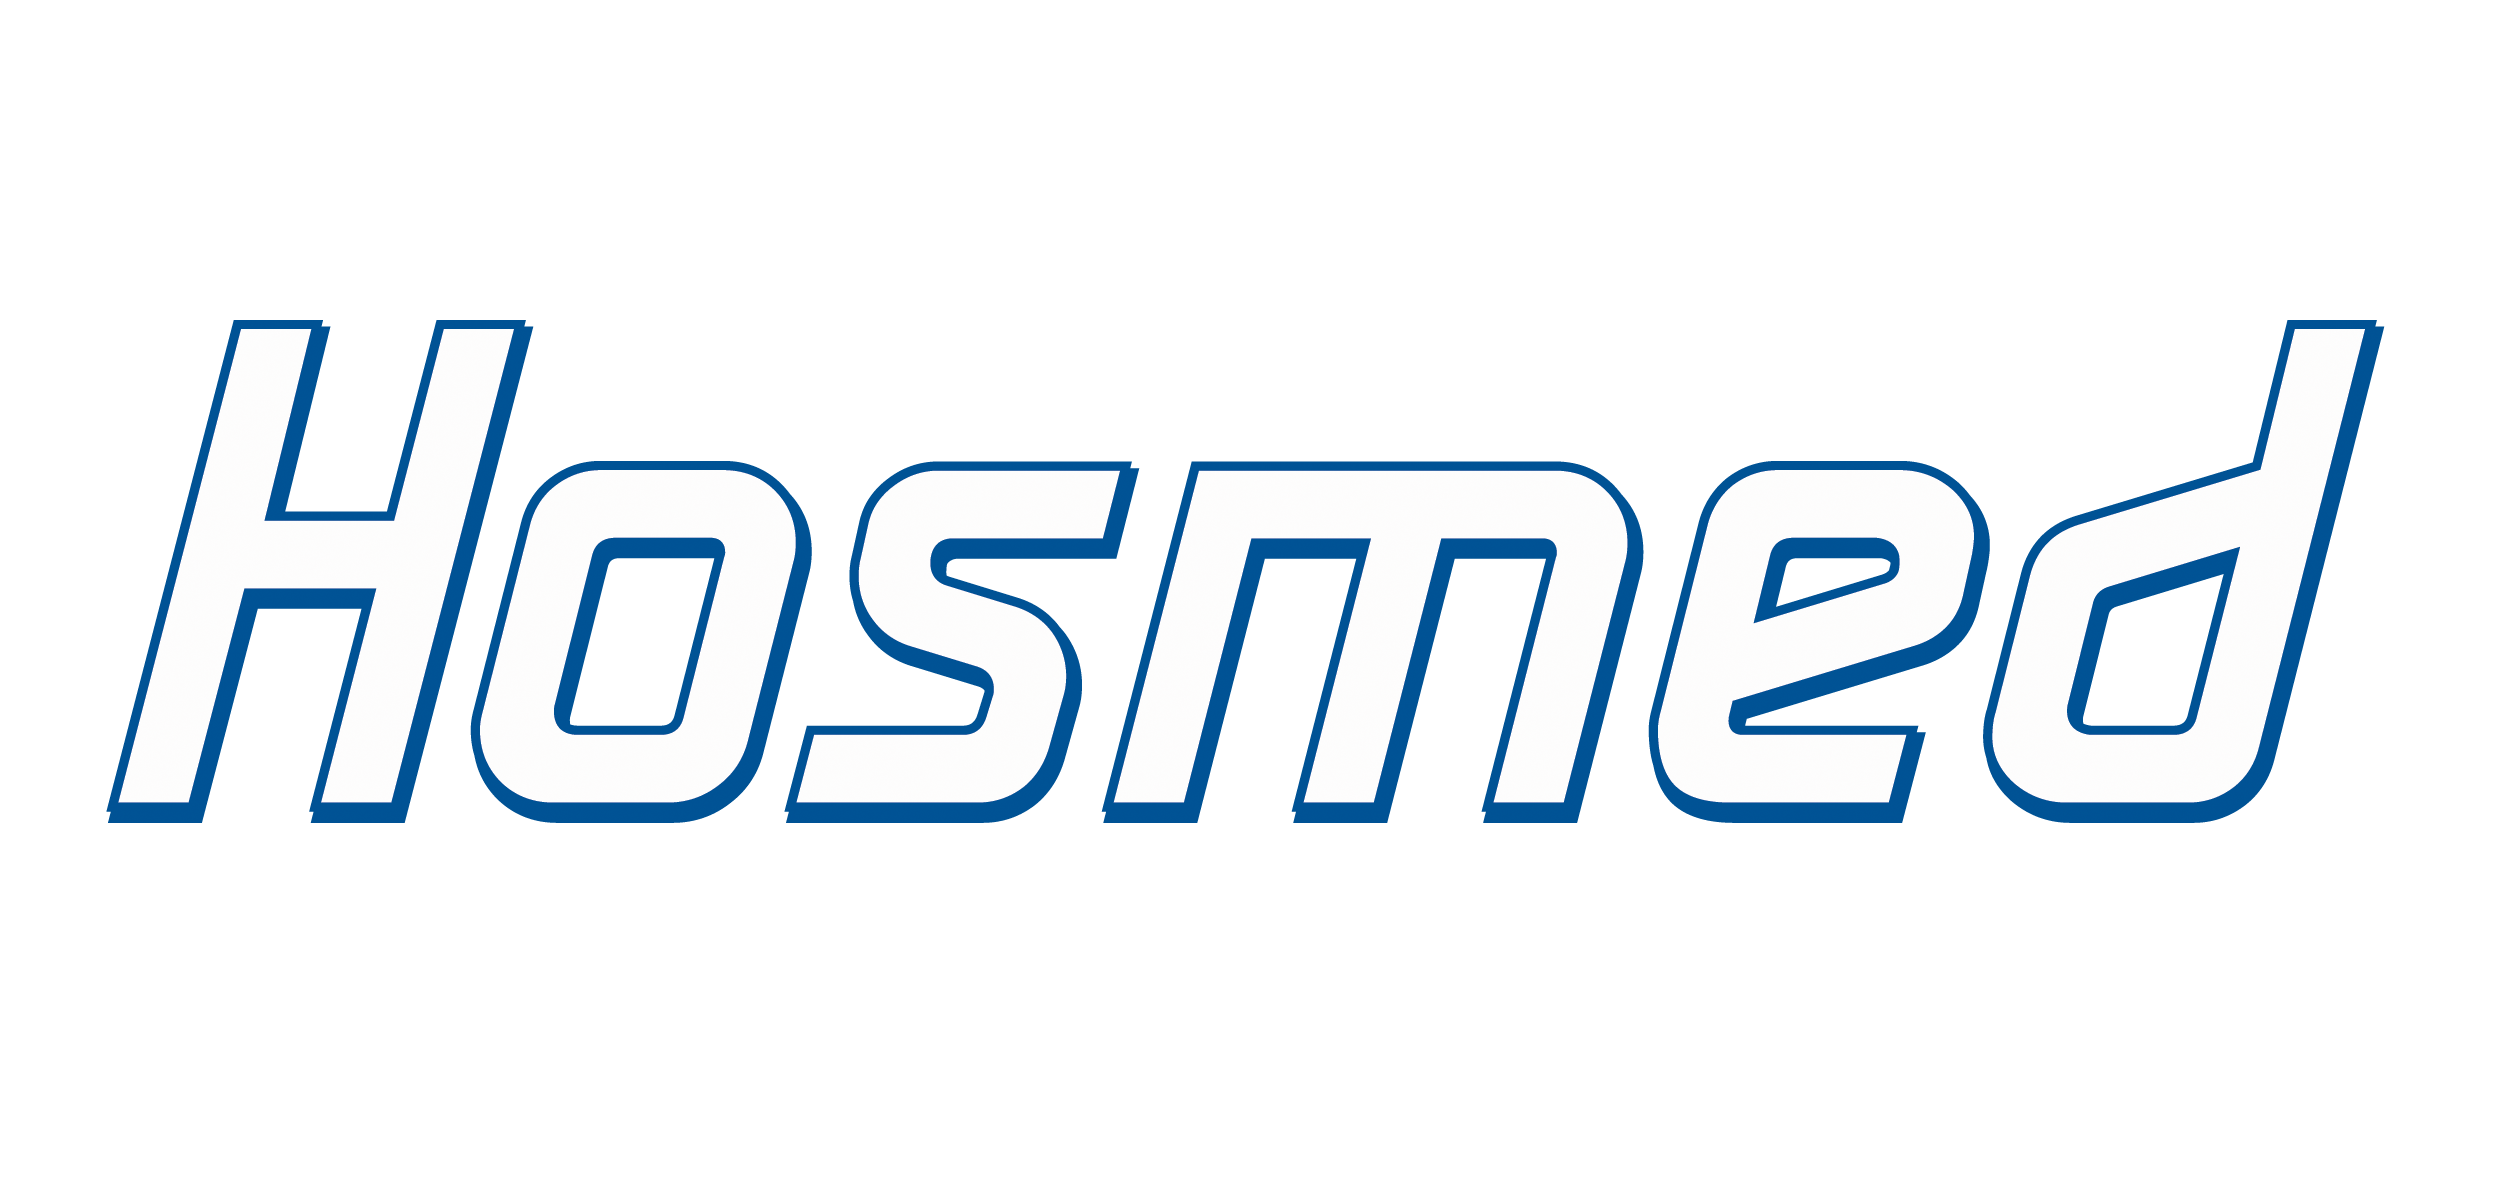 Hosmed logo